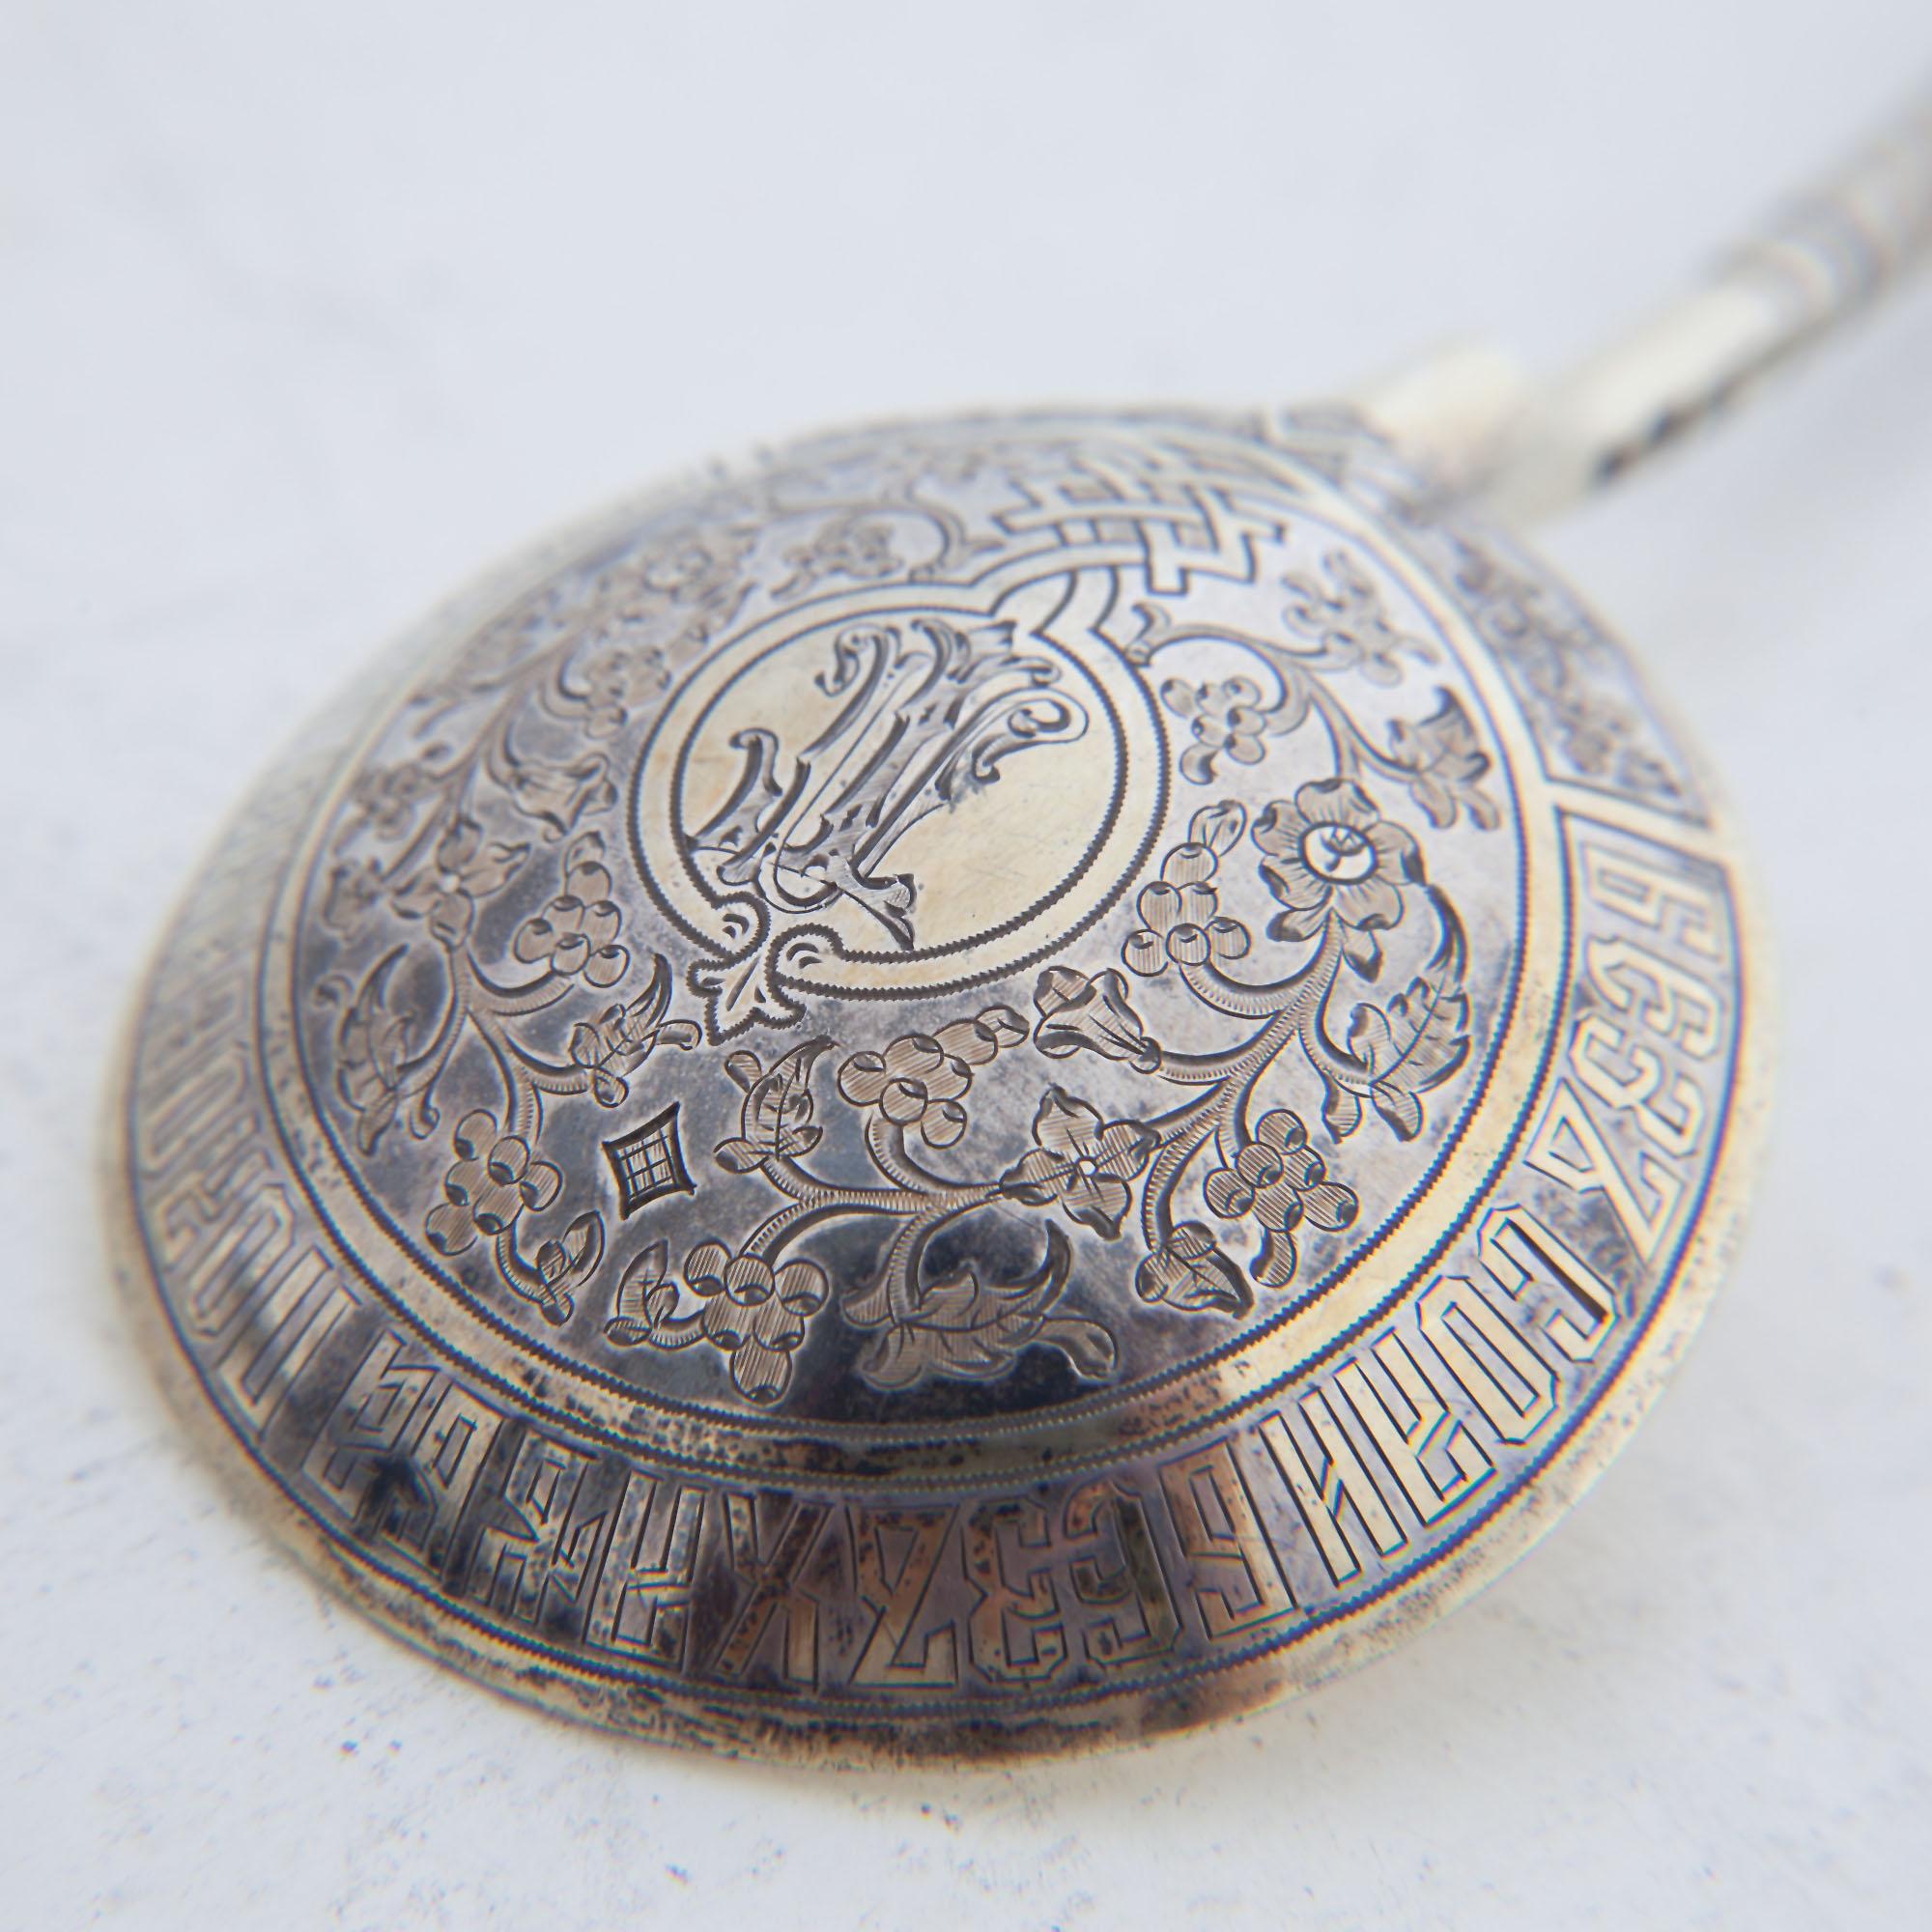 Großer russischer Silberlöffel mit gedrehtem Griff und rundem Kopf. Gestempelte Herstellermarke Ovchinikov, Gewicht 77 g.
  